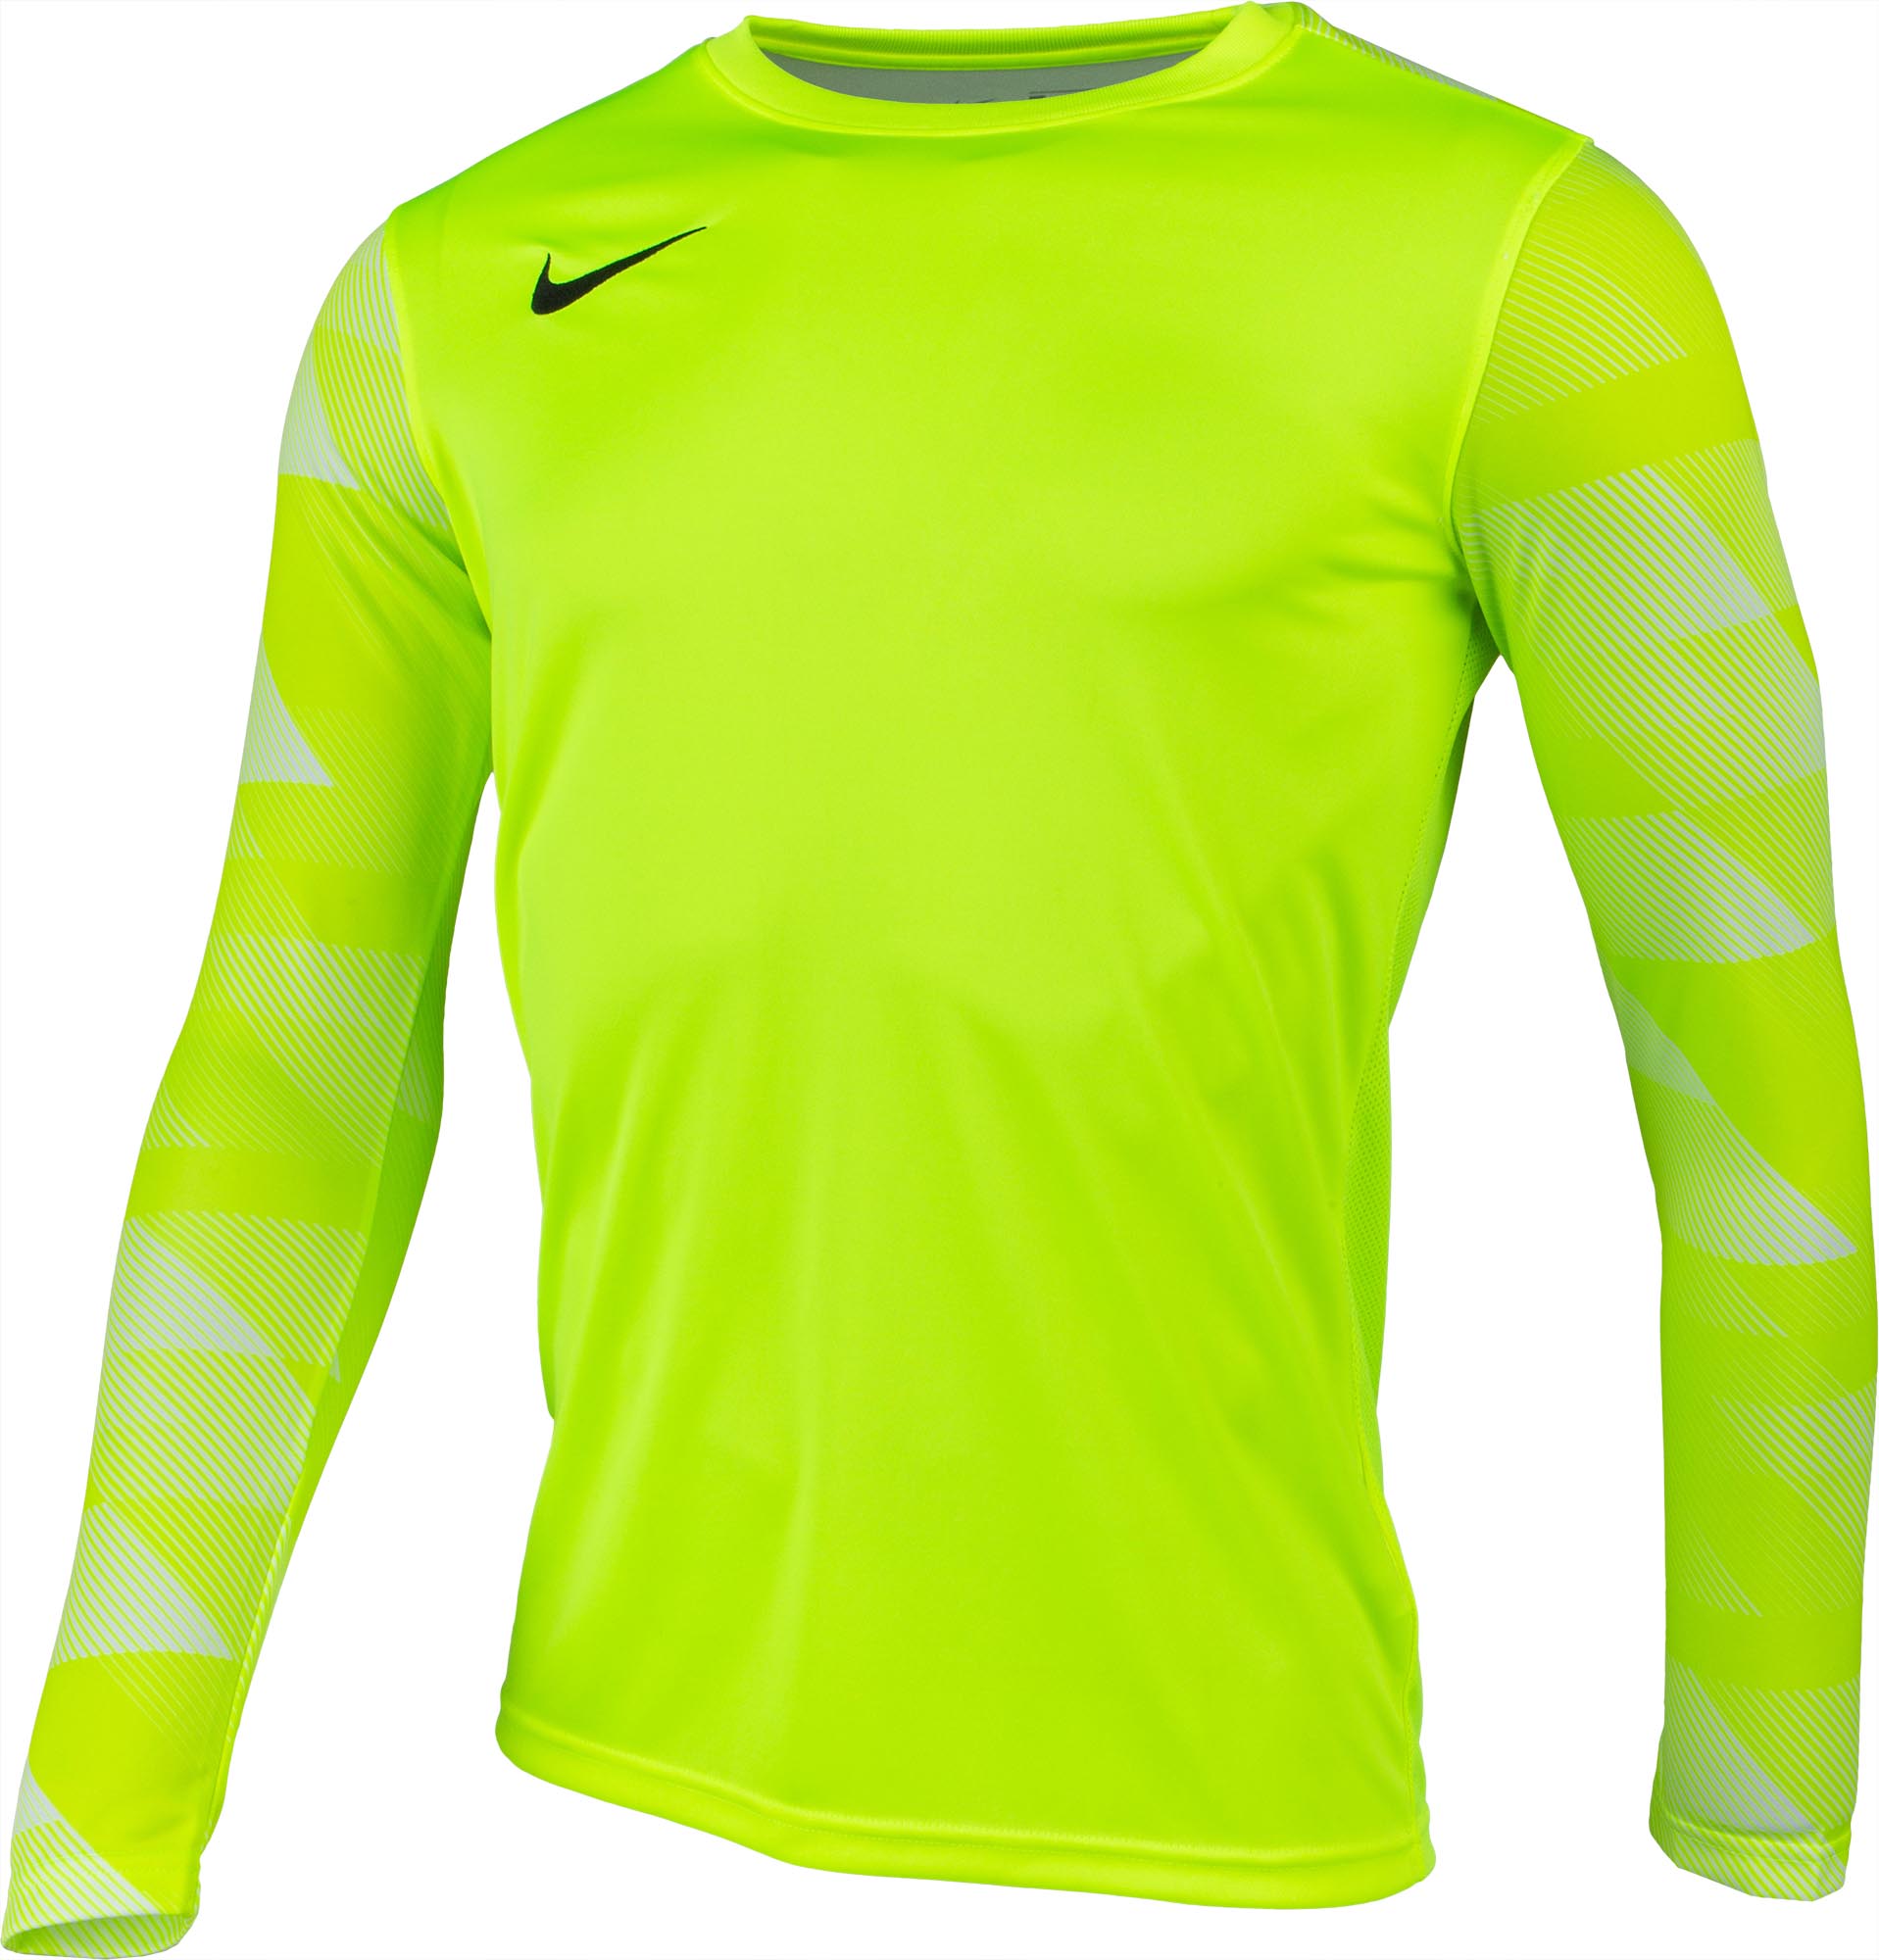 Men’s goalkeeper jersey